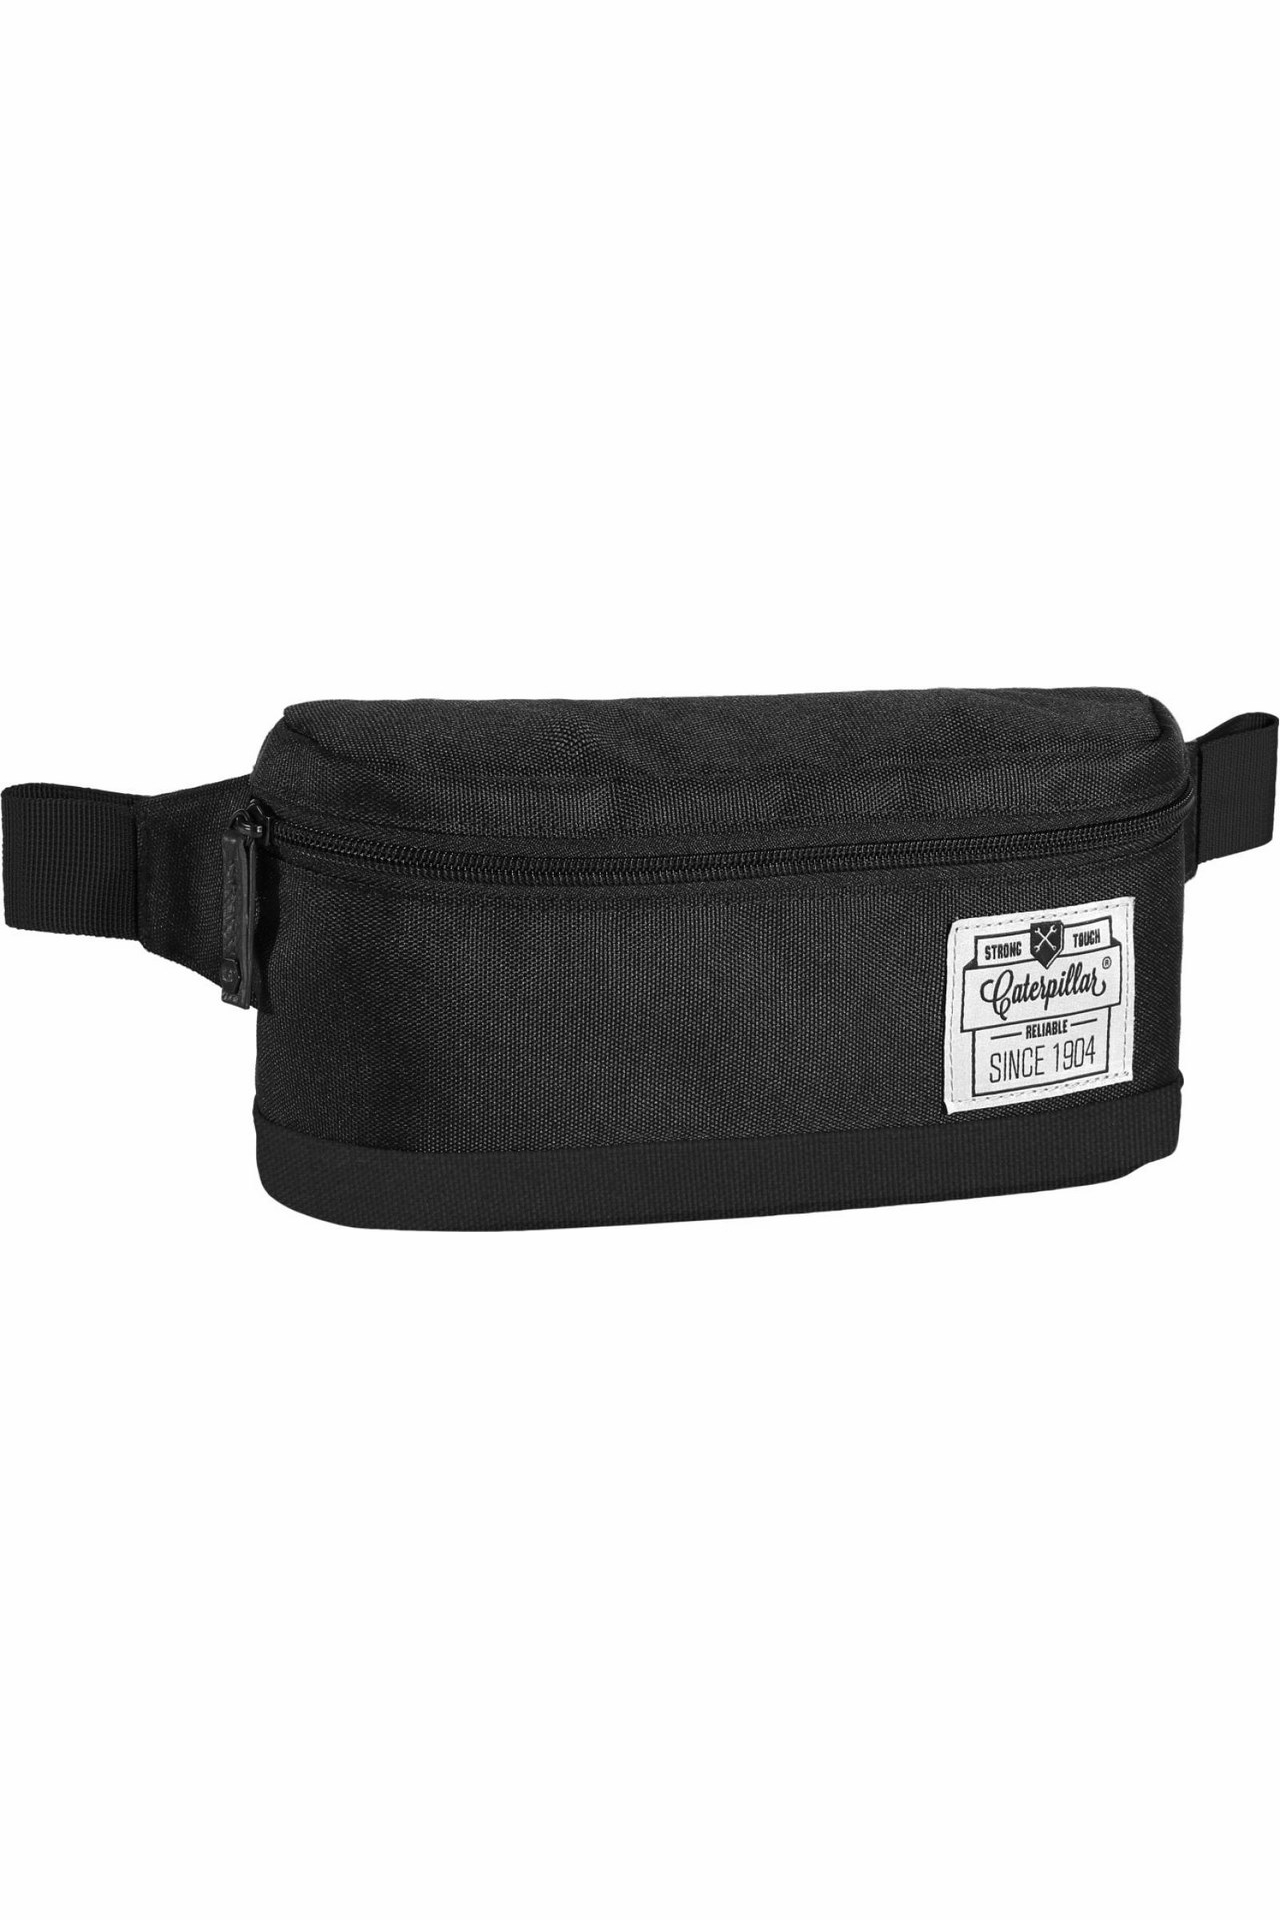 Belt bag CAT 83275-01